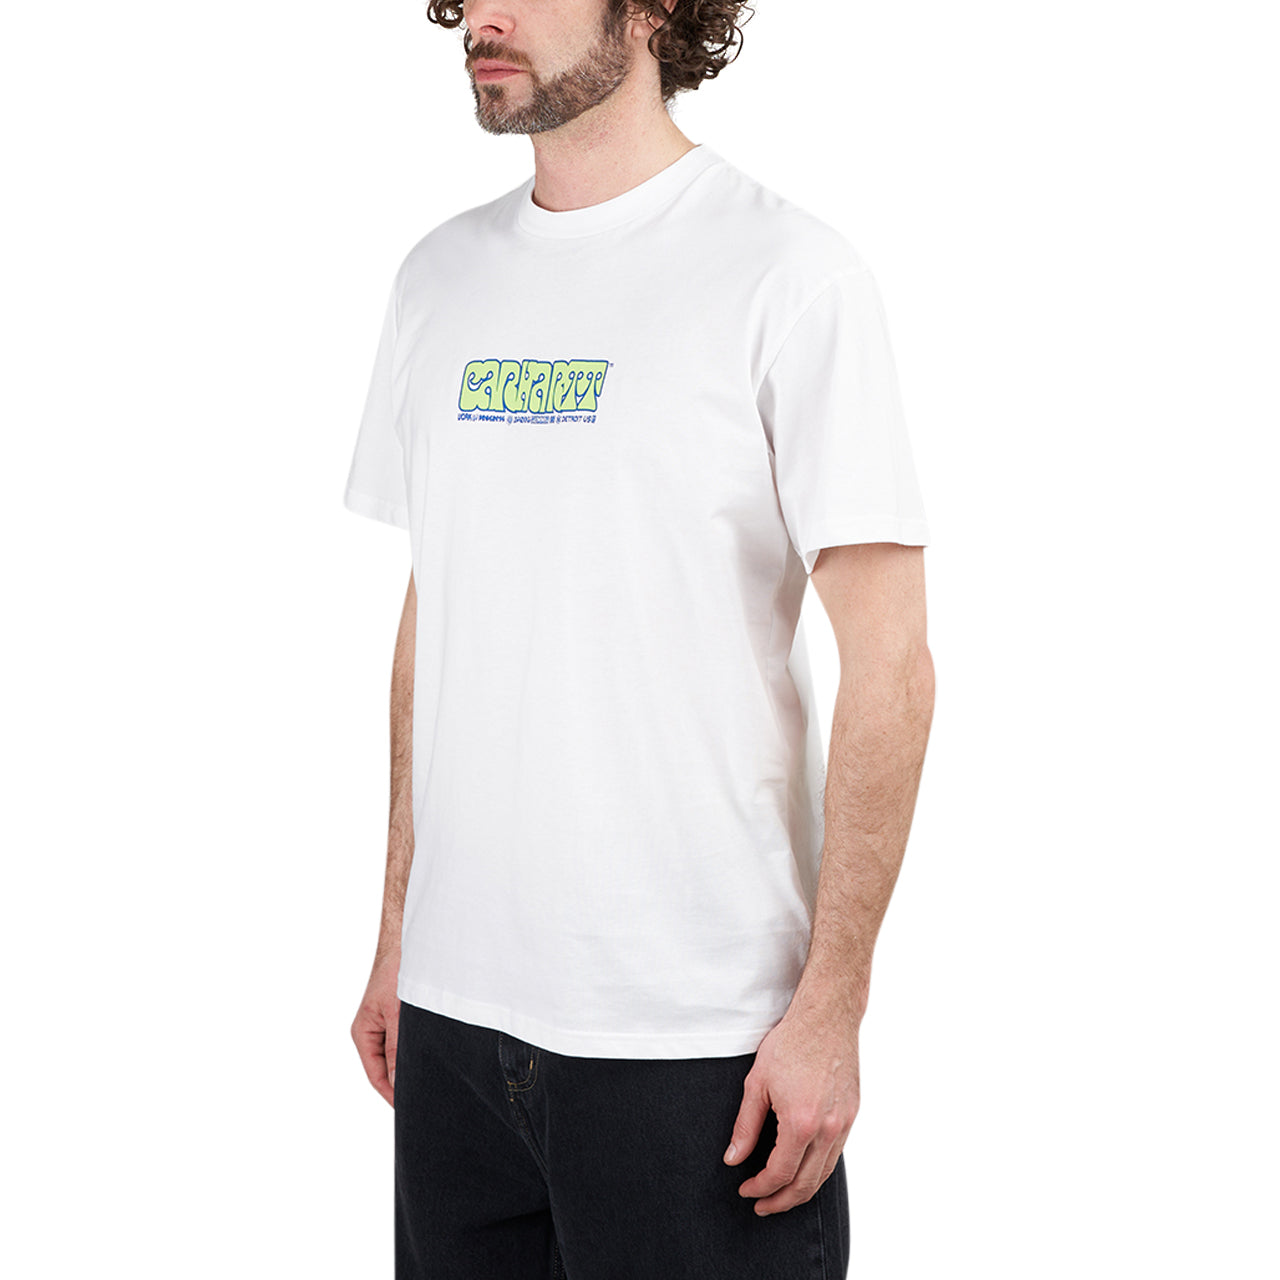 Carhartt WIP S/S Heat Script T-Shirt (Weiß)  - Allike Store